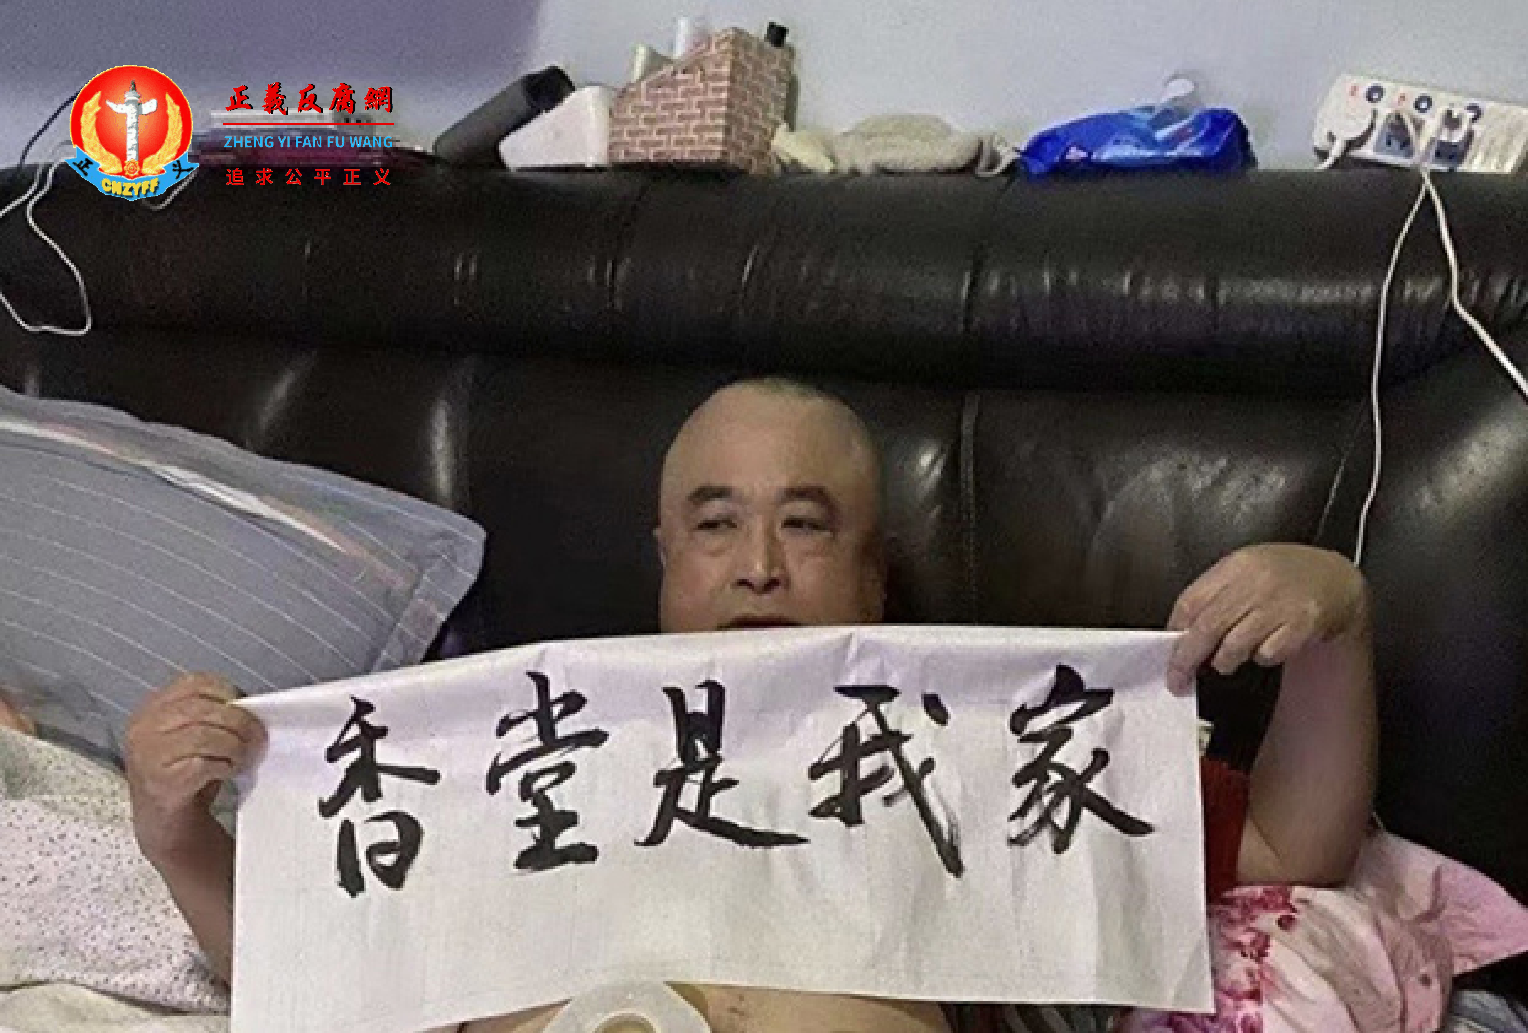 一名卧病在床的老人在家中举起横幅“香堂是我家”，表示对强拆的抗议。.png